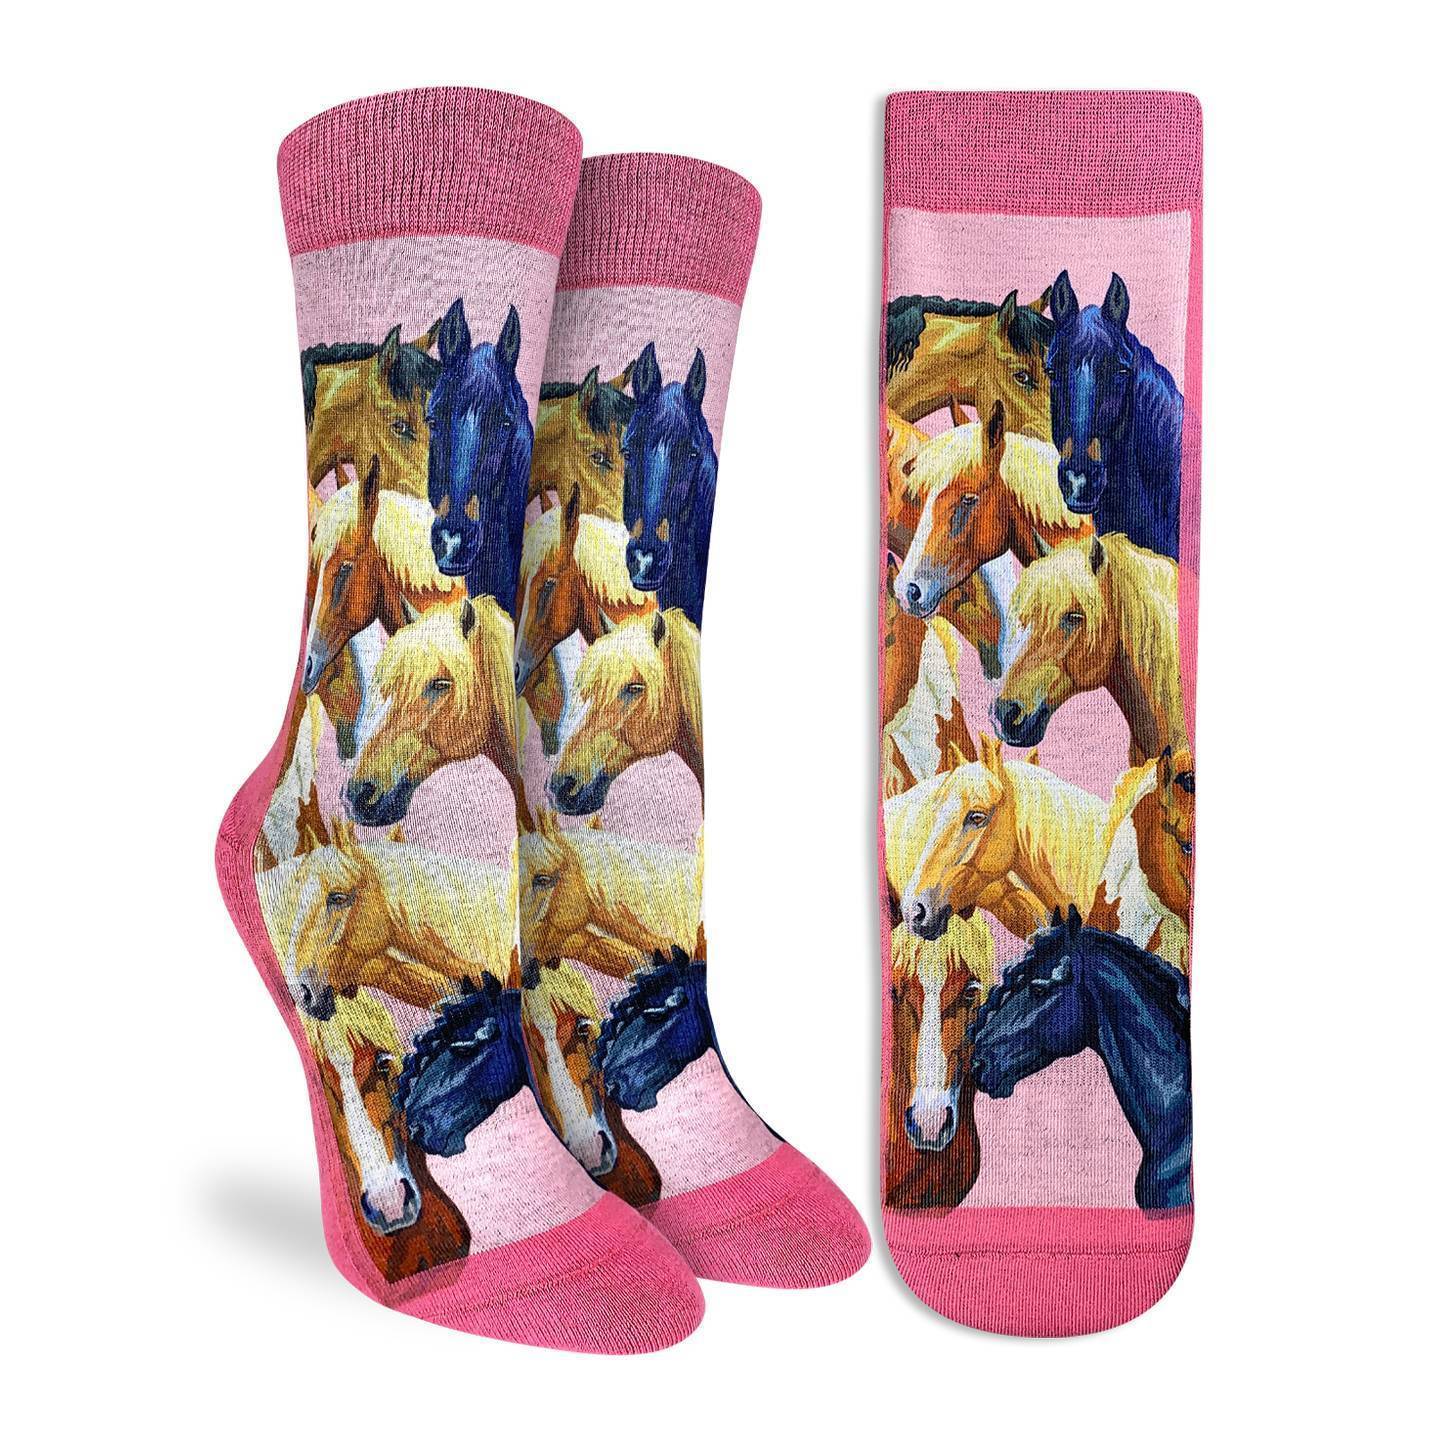 Women's Horses Socks – Good Luck Sock